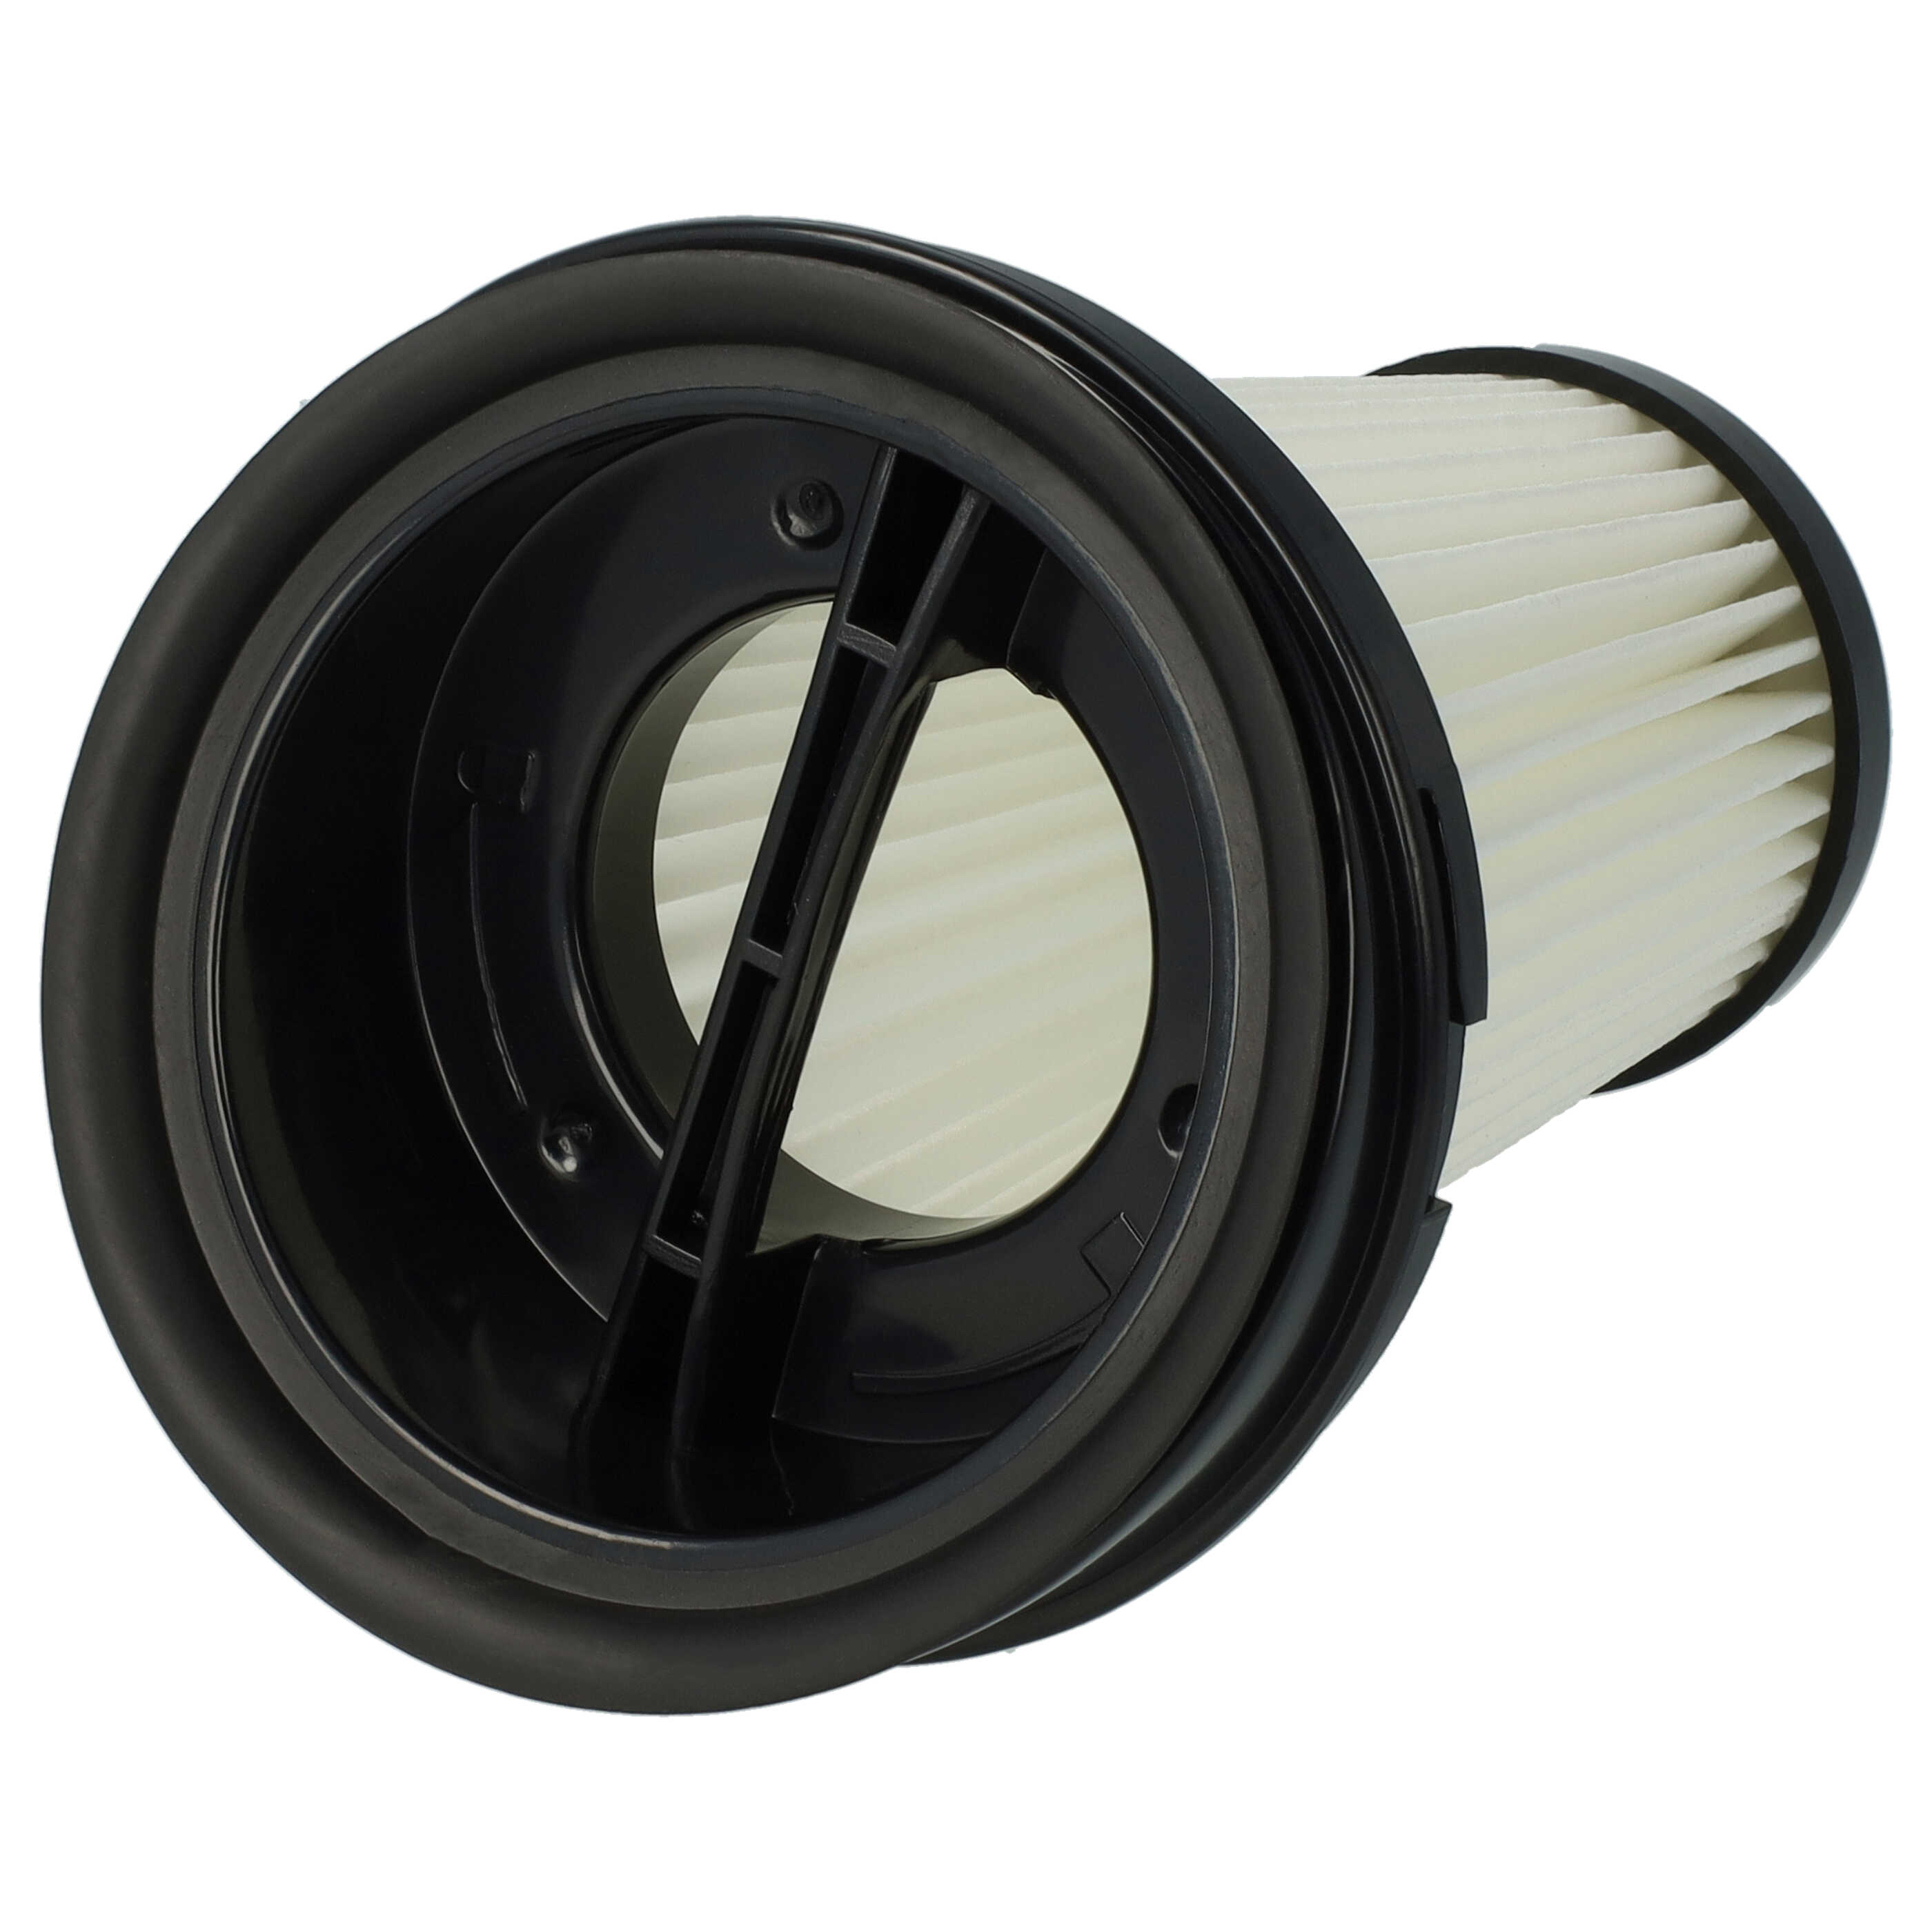 Filtre remplace Grundig 9178008590 pour aspirateur - filtre plissé